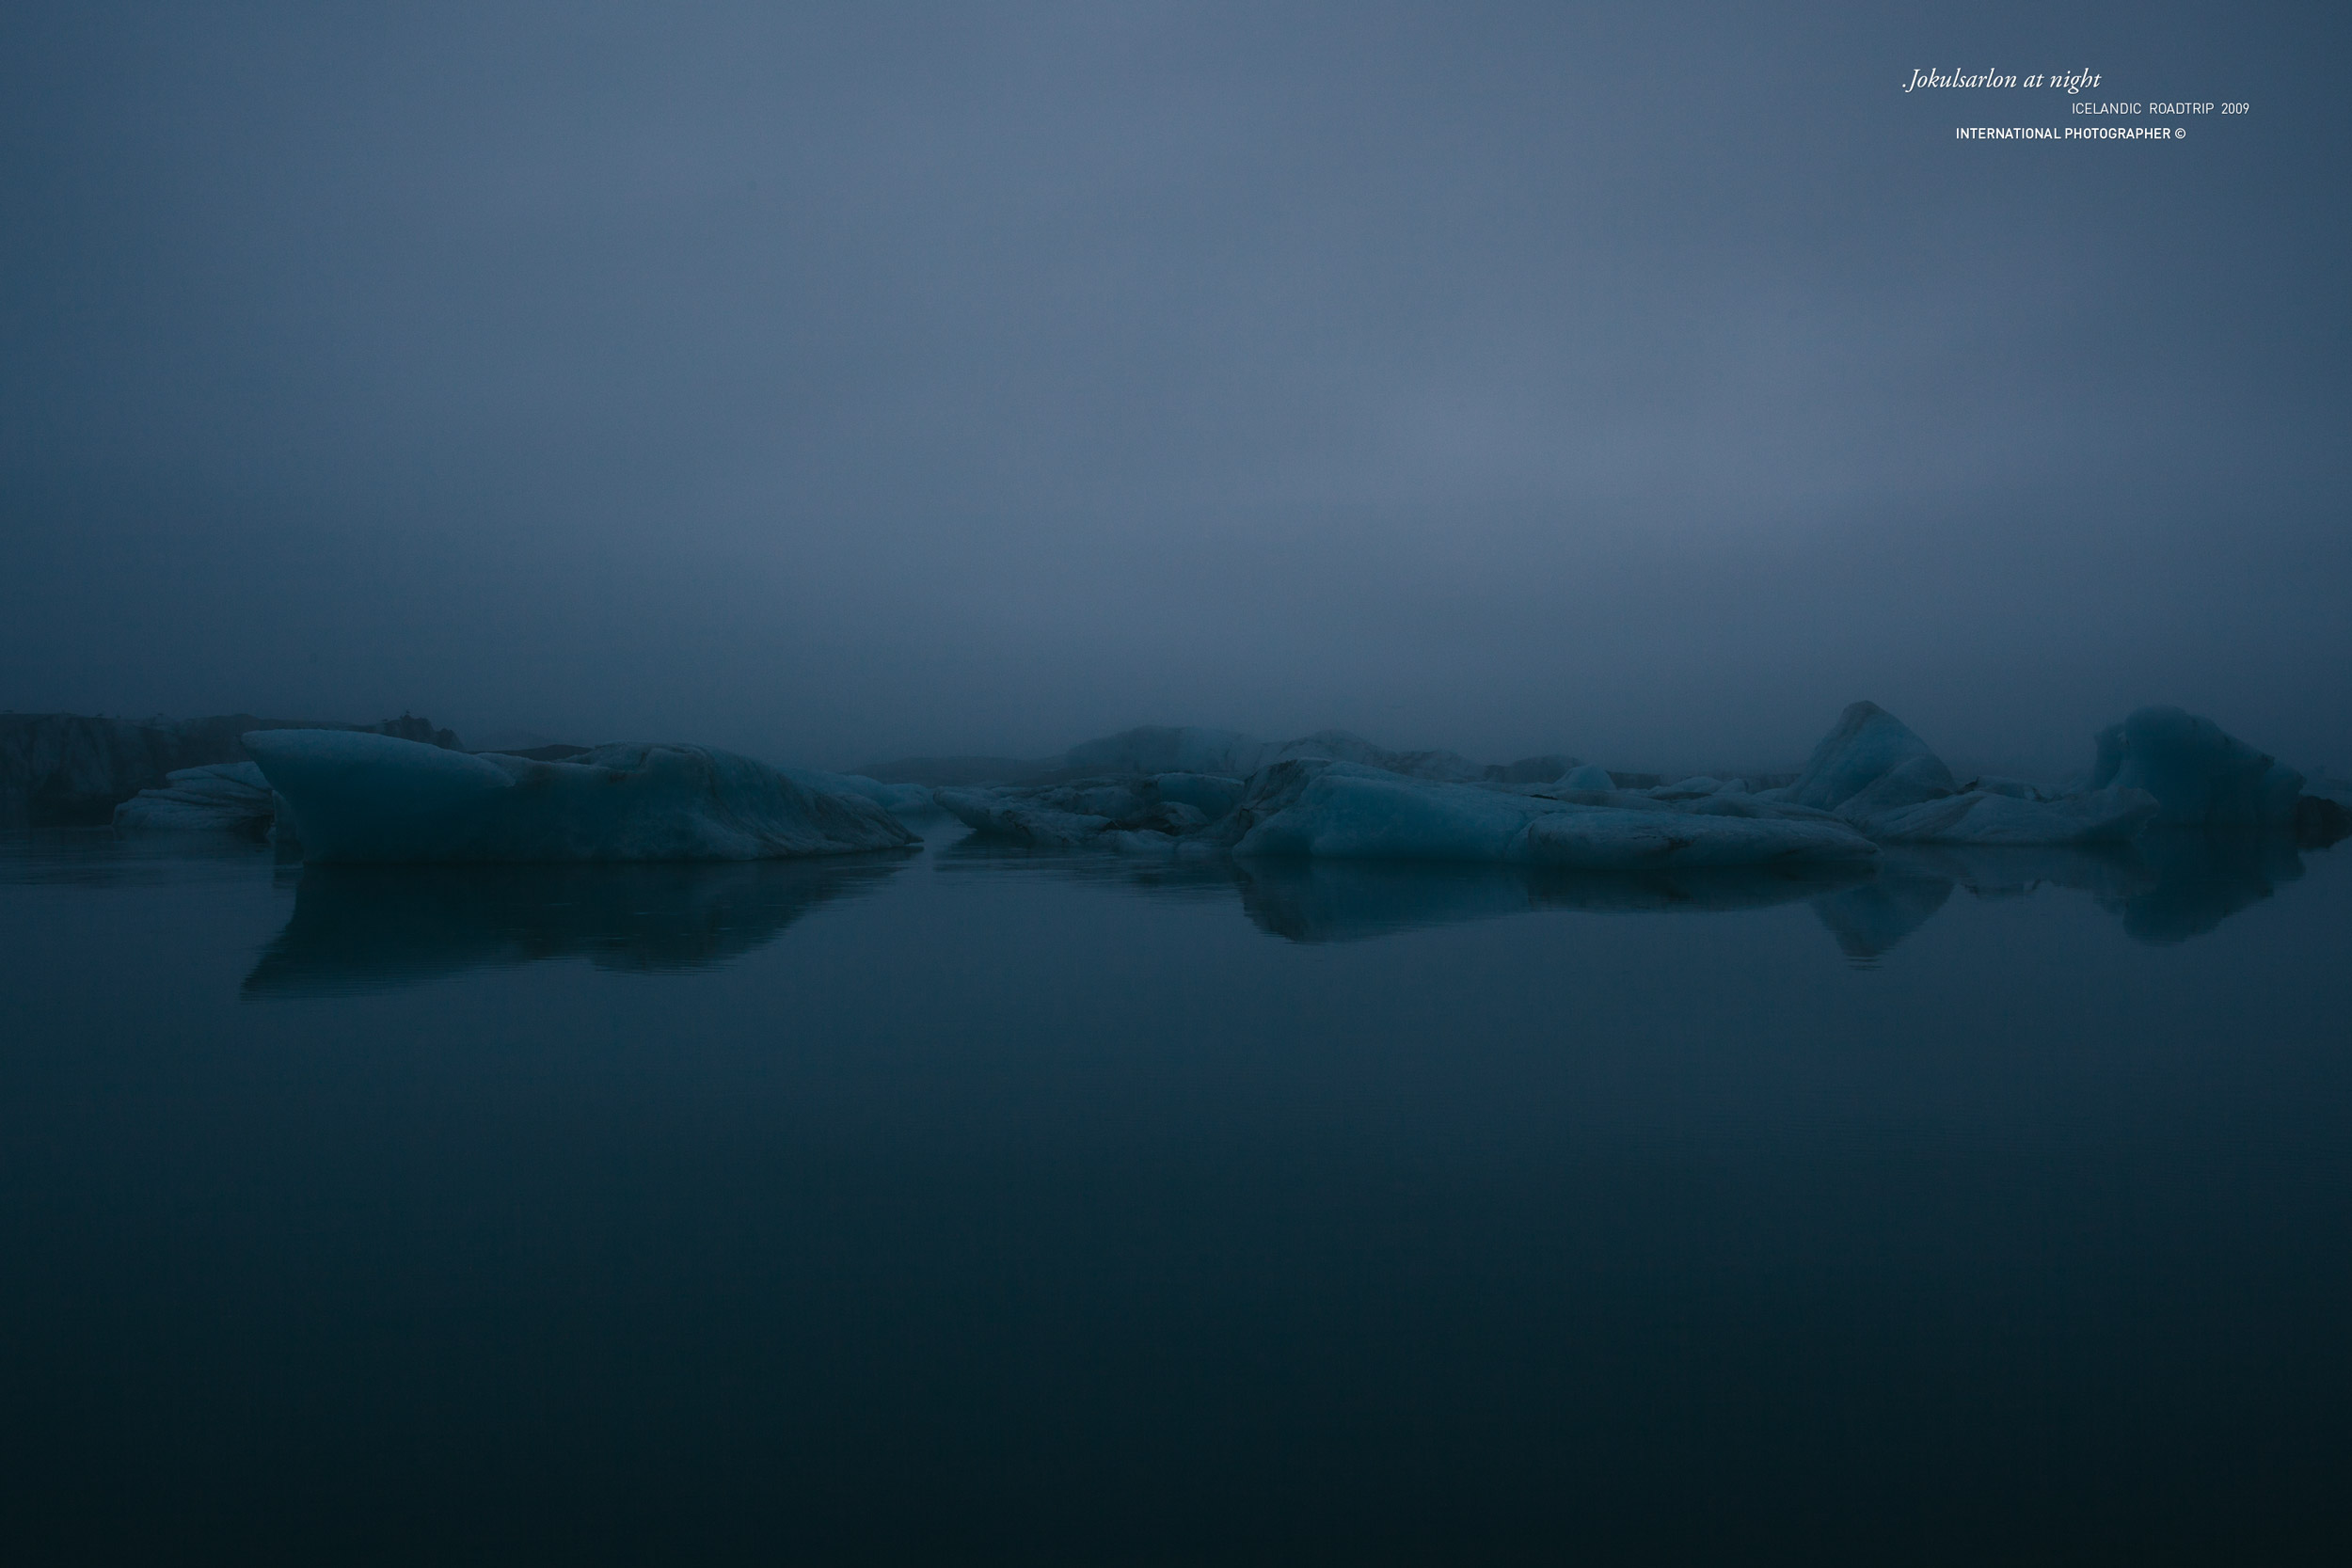 Le lac glaciaire Jokulsarlon la nuit